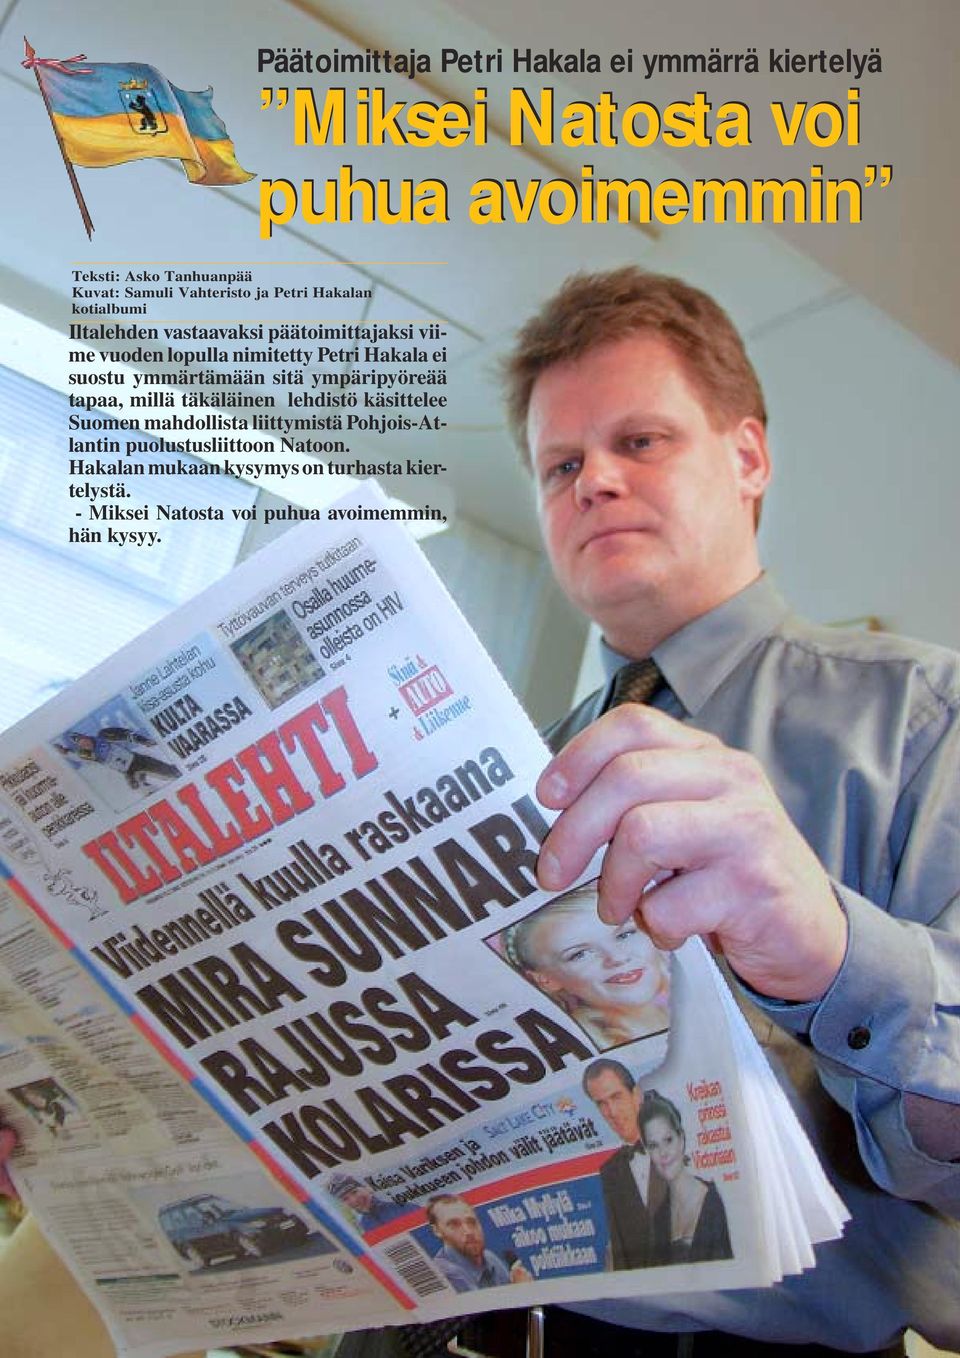 suostu ymmärtämään sitä ympäripyöreää tapaa, millä täkäläinen lehdistö käsittelee Suomen mahdollista liittymistä